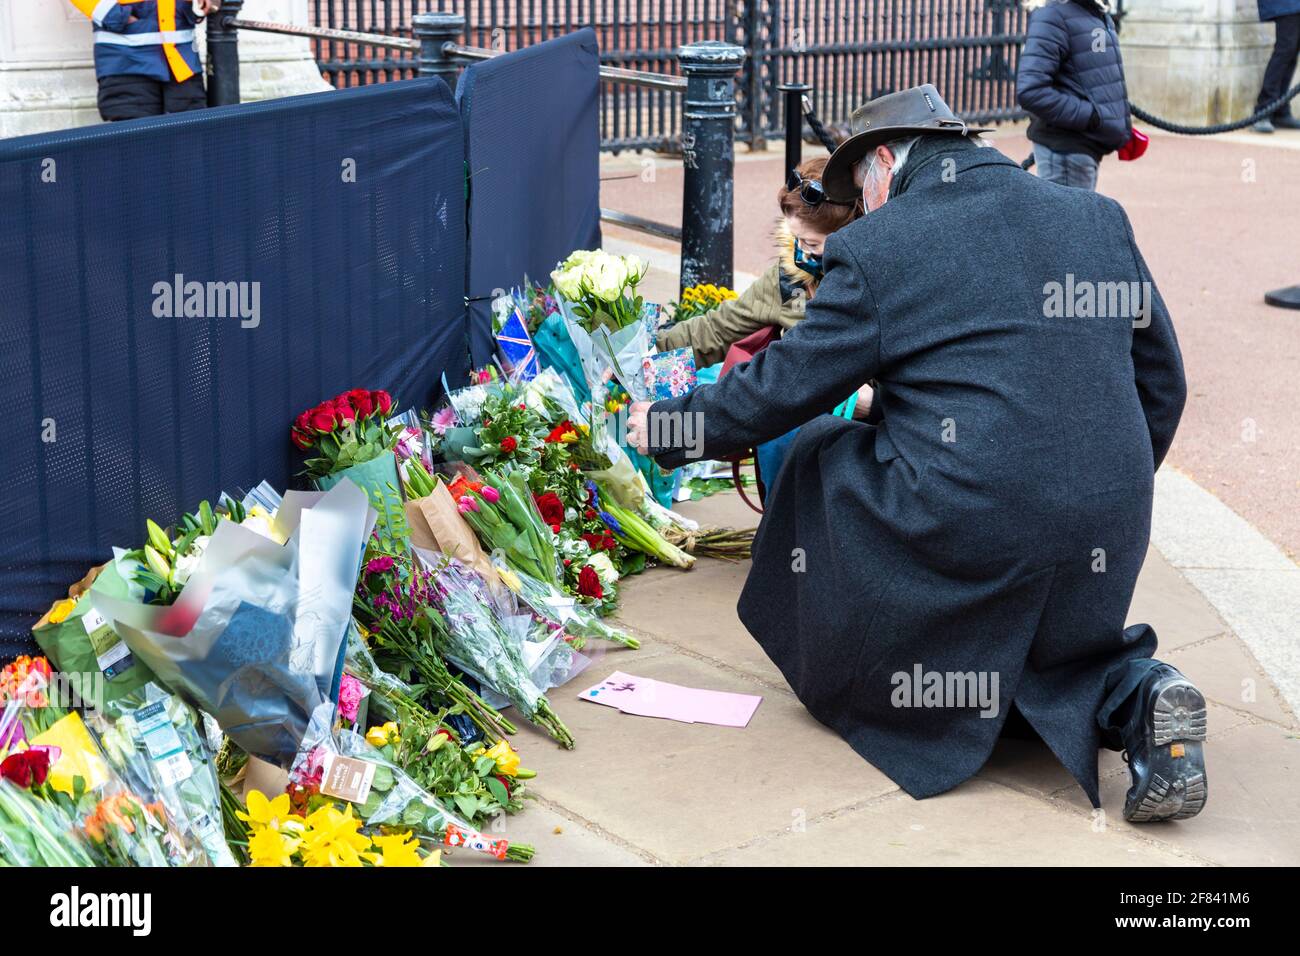 11 de abril de 2021, Londres, Reino Unido - Personas que ponen flores como tributo al Príncipe Felipe, Duque de Edimburgo en las afueras del Palacio de Buckingham después de su muerte el 9th de abril Foto de stock